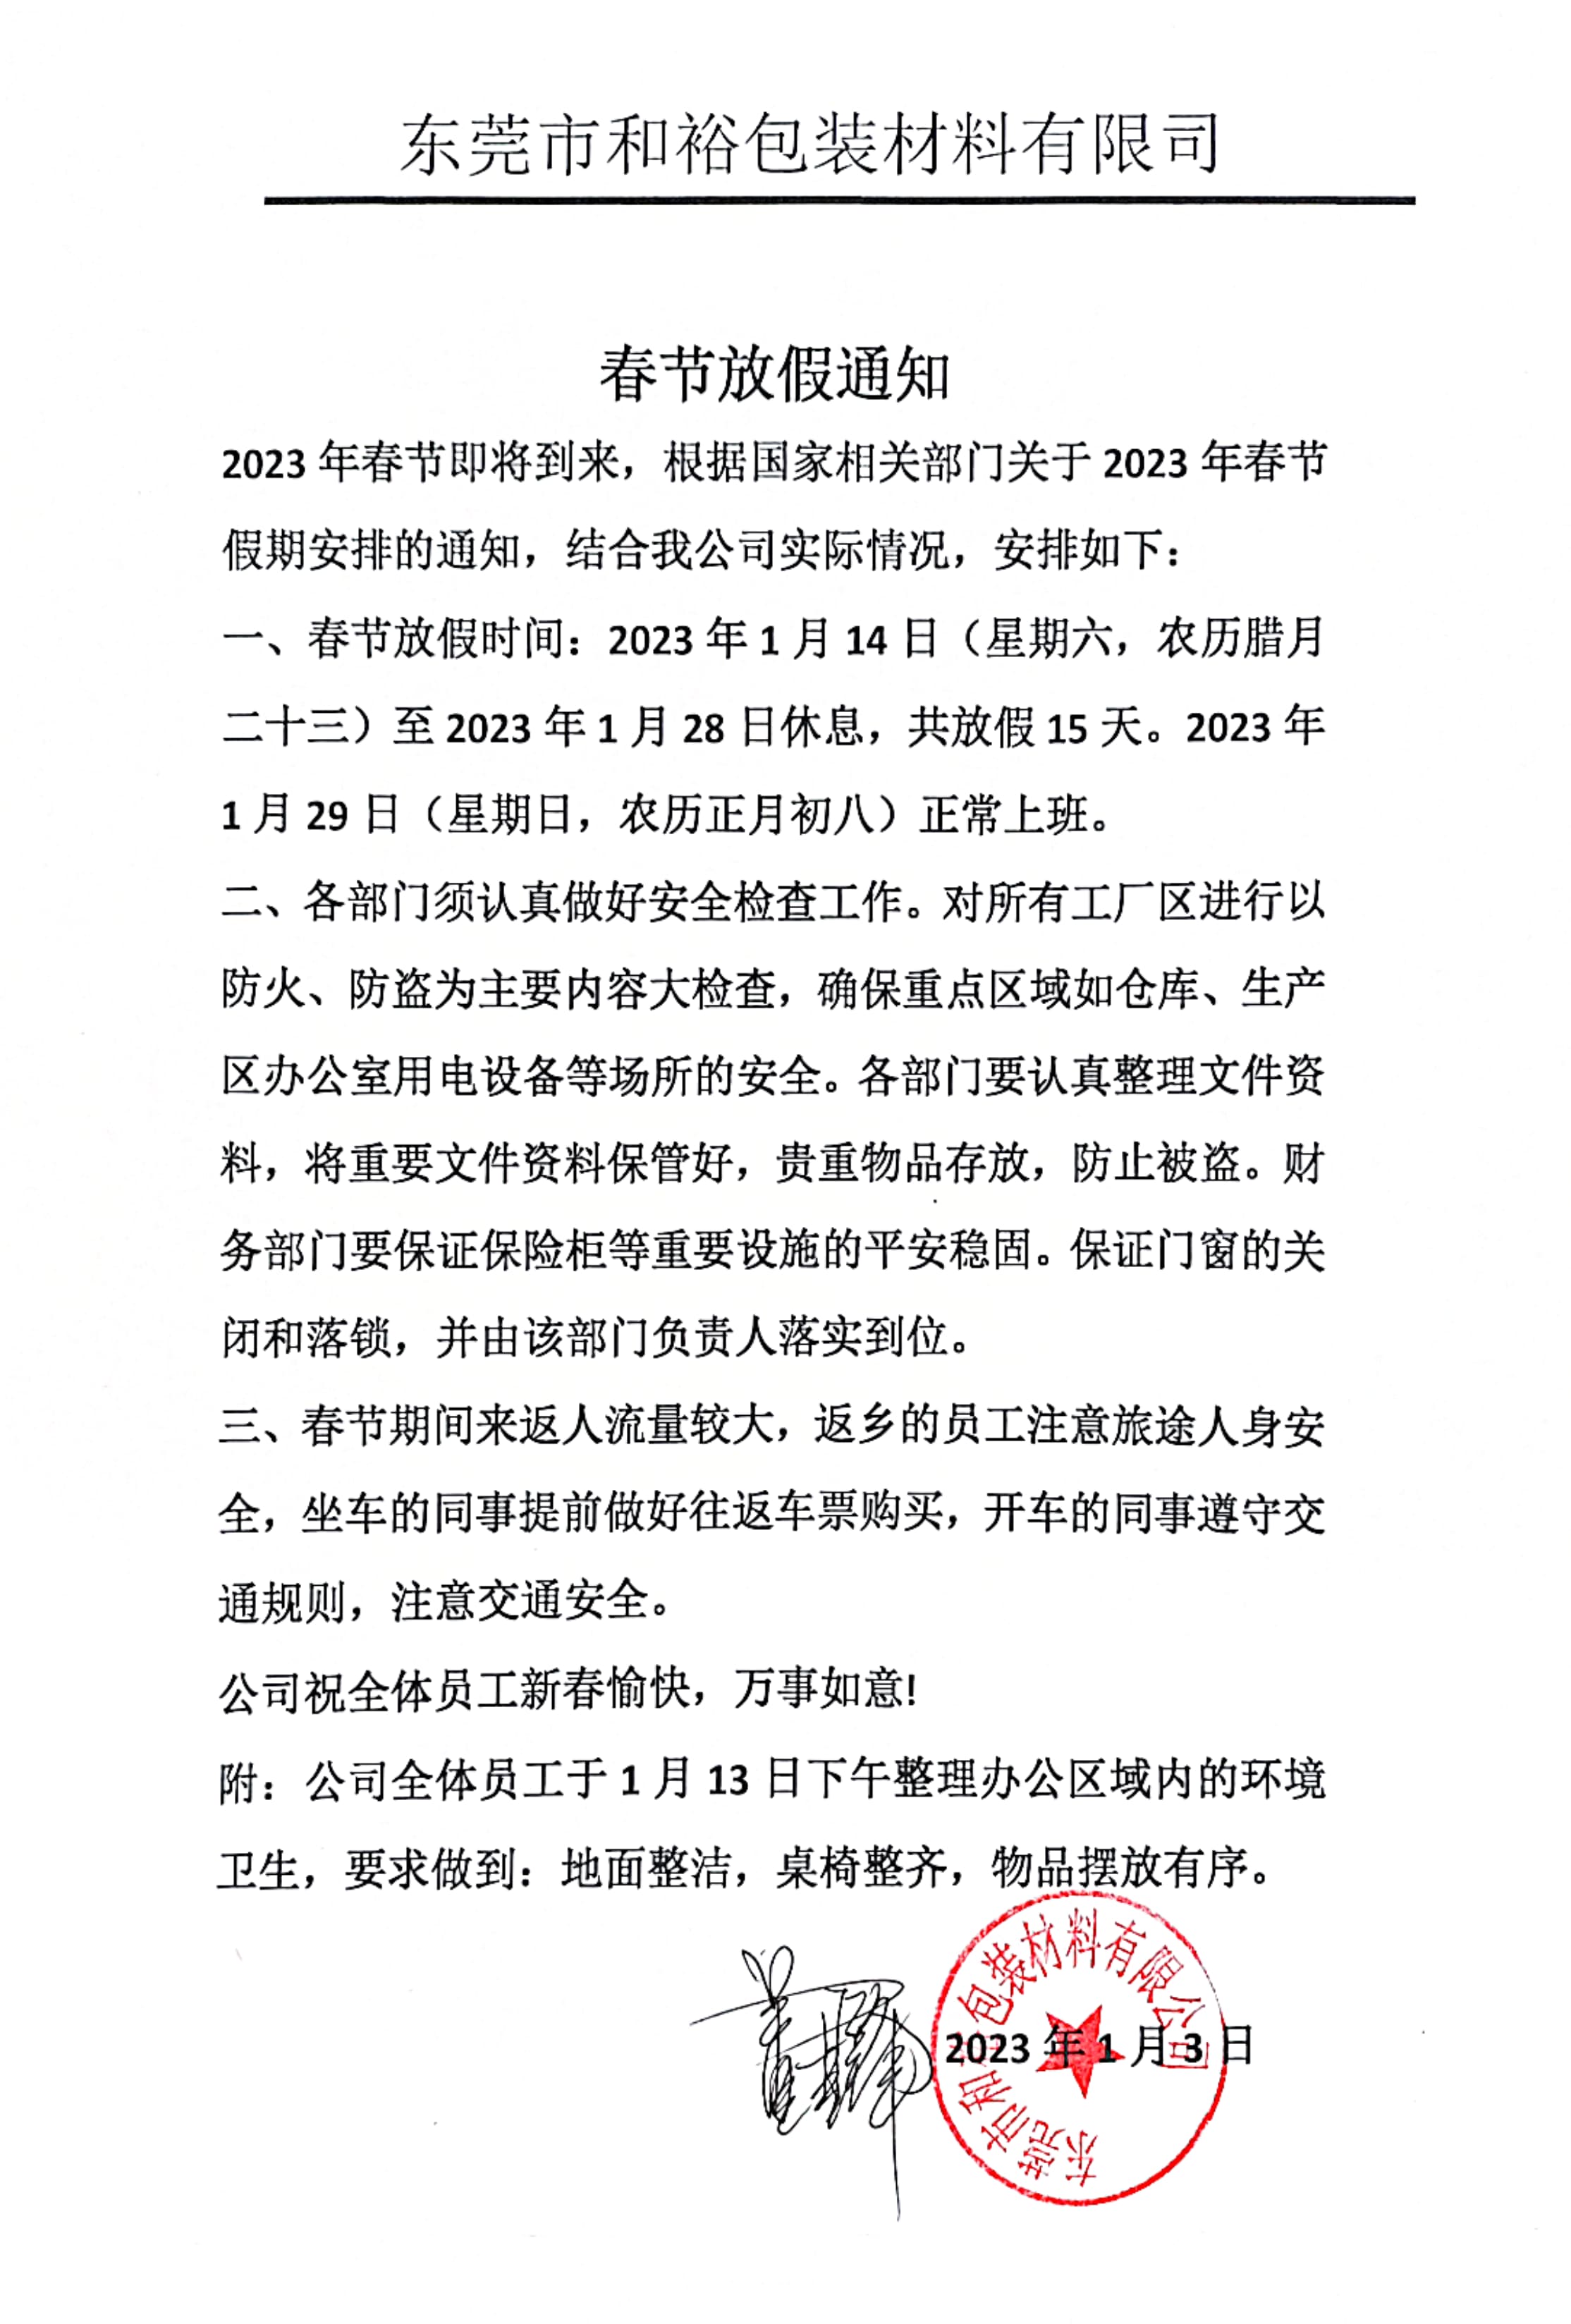 忠县2023年和裕包装春节放假通知